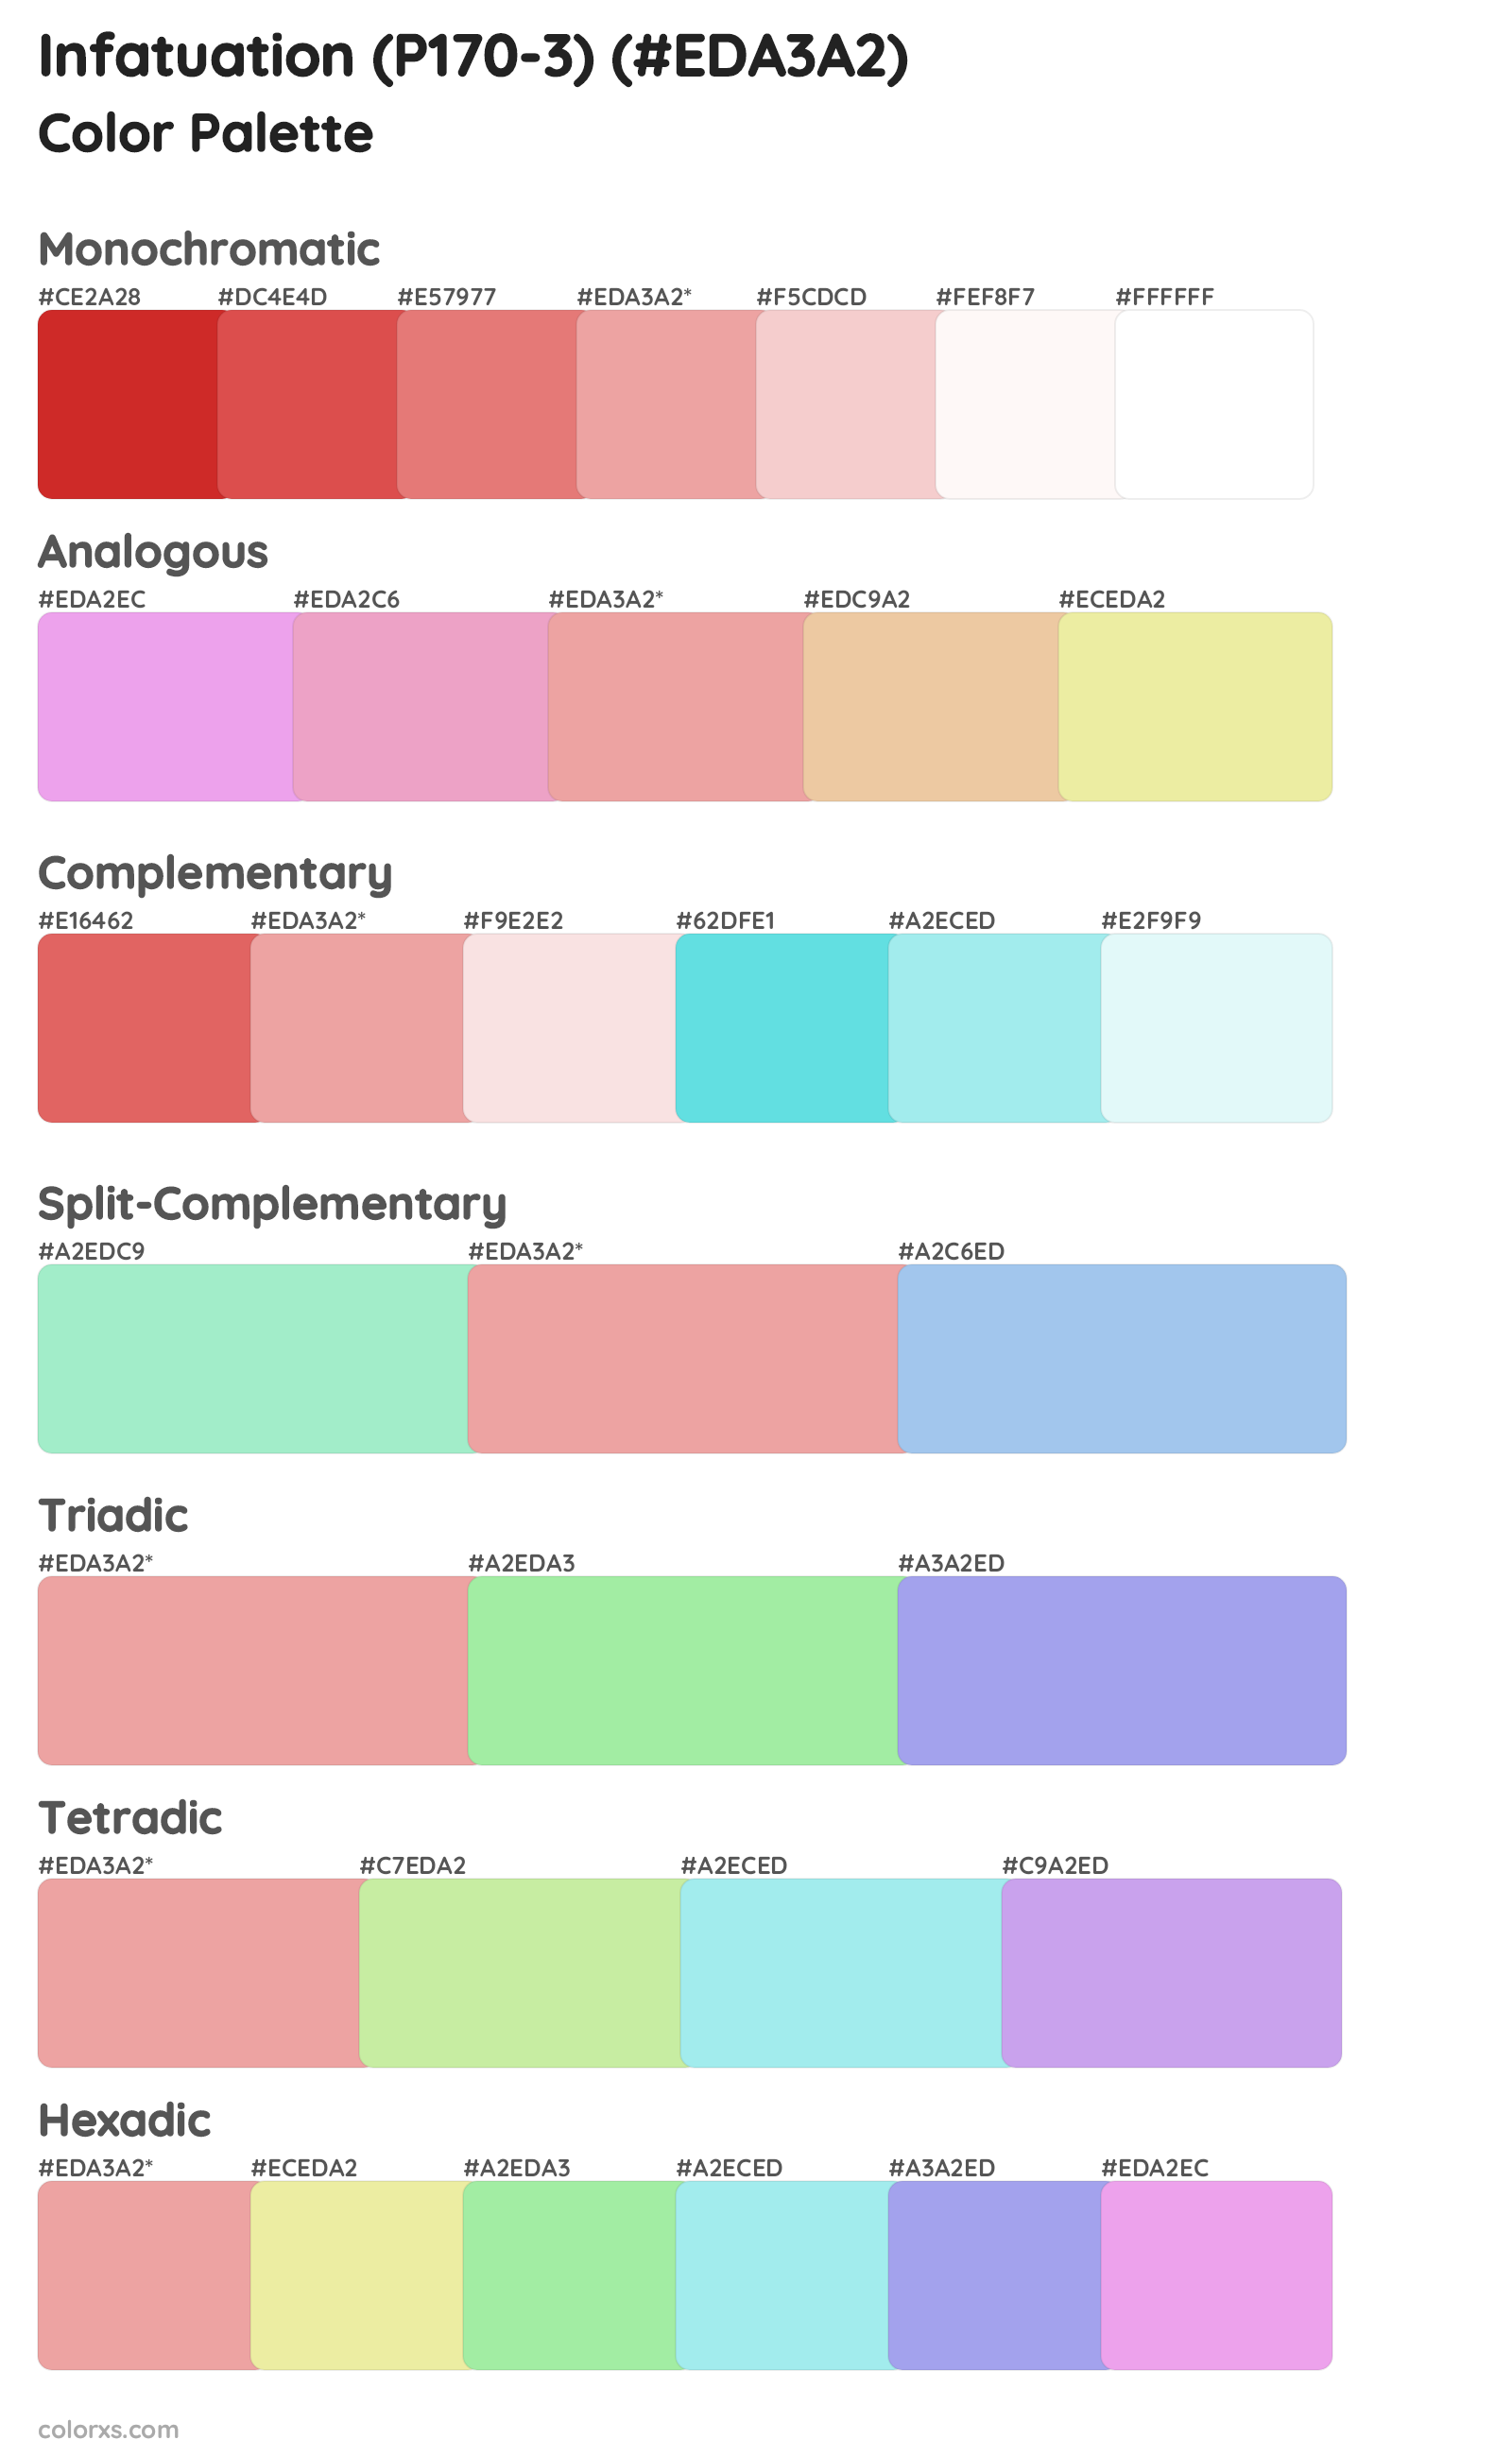 Infatuation (P170-3) Color Scheme Palettes